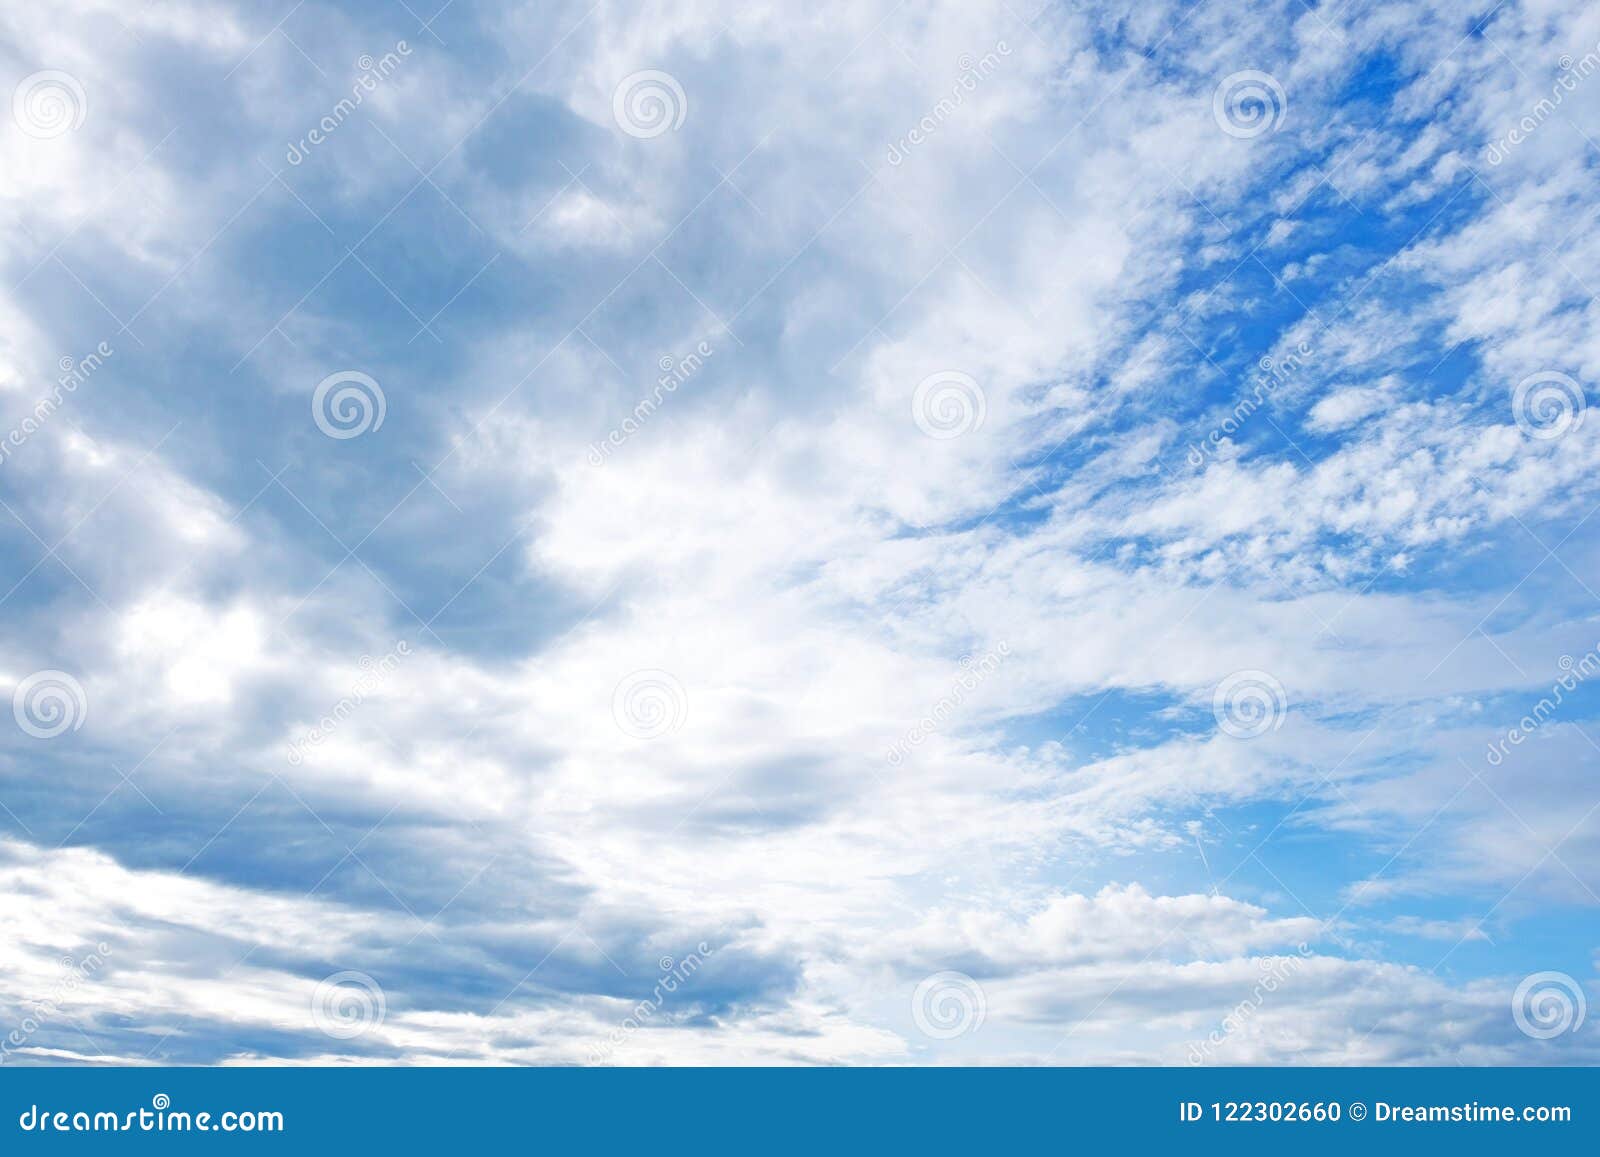 Εξετάστε επάνω τη θάλασσα του μπλε επάνω από τη γη Τα αυξομειούμενα άσπρα σύννεφα διαστίζουν σαφείς τον μπλε και το επιπλέον σώμα lazily πέρα από εκείνο τον αερώδη ωκεανό